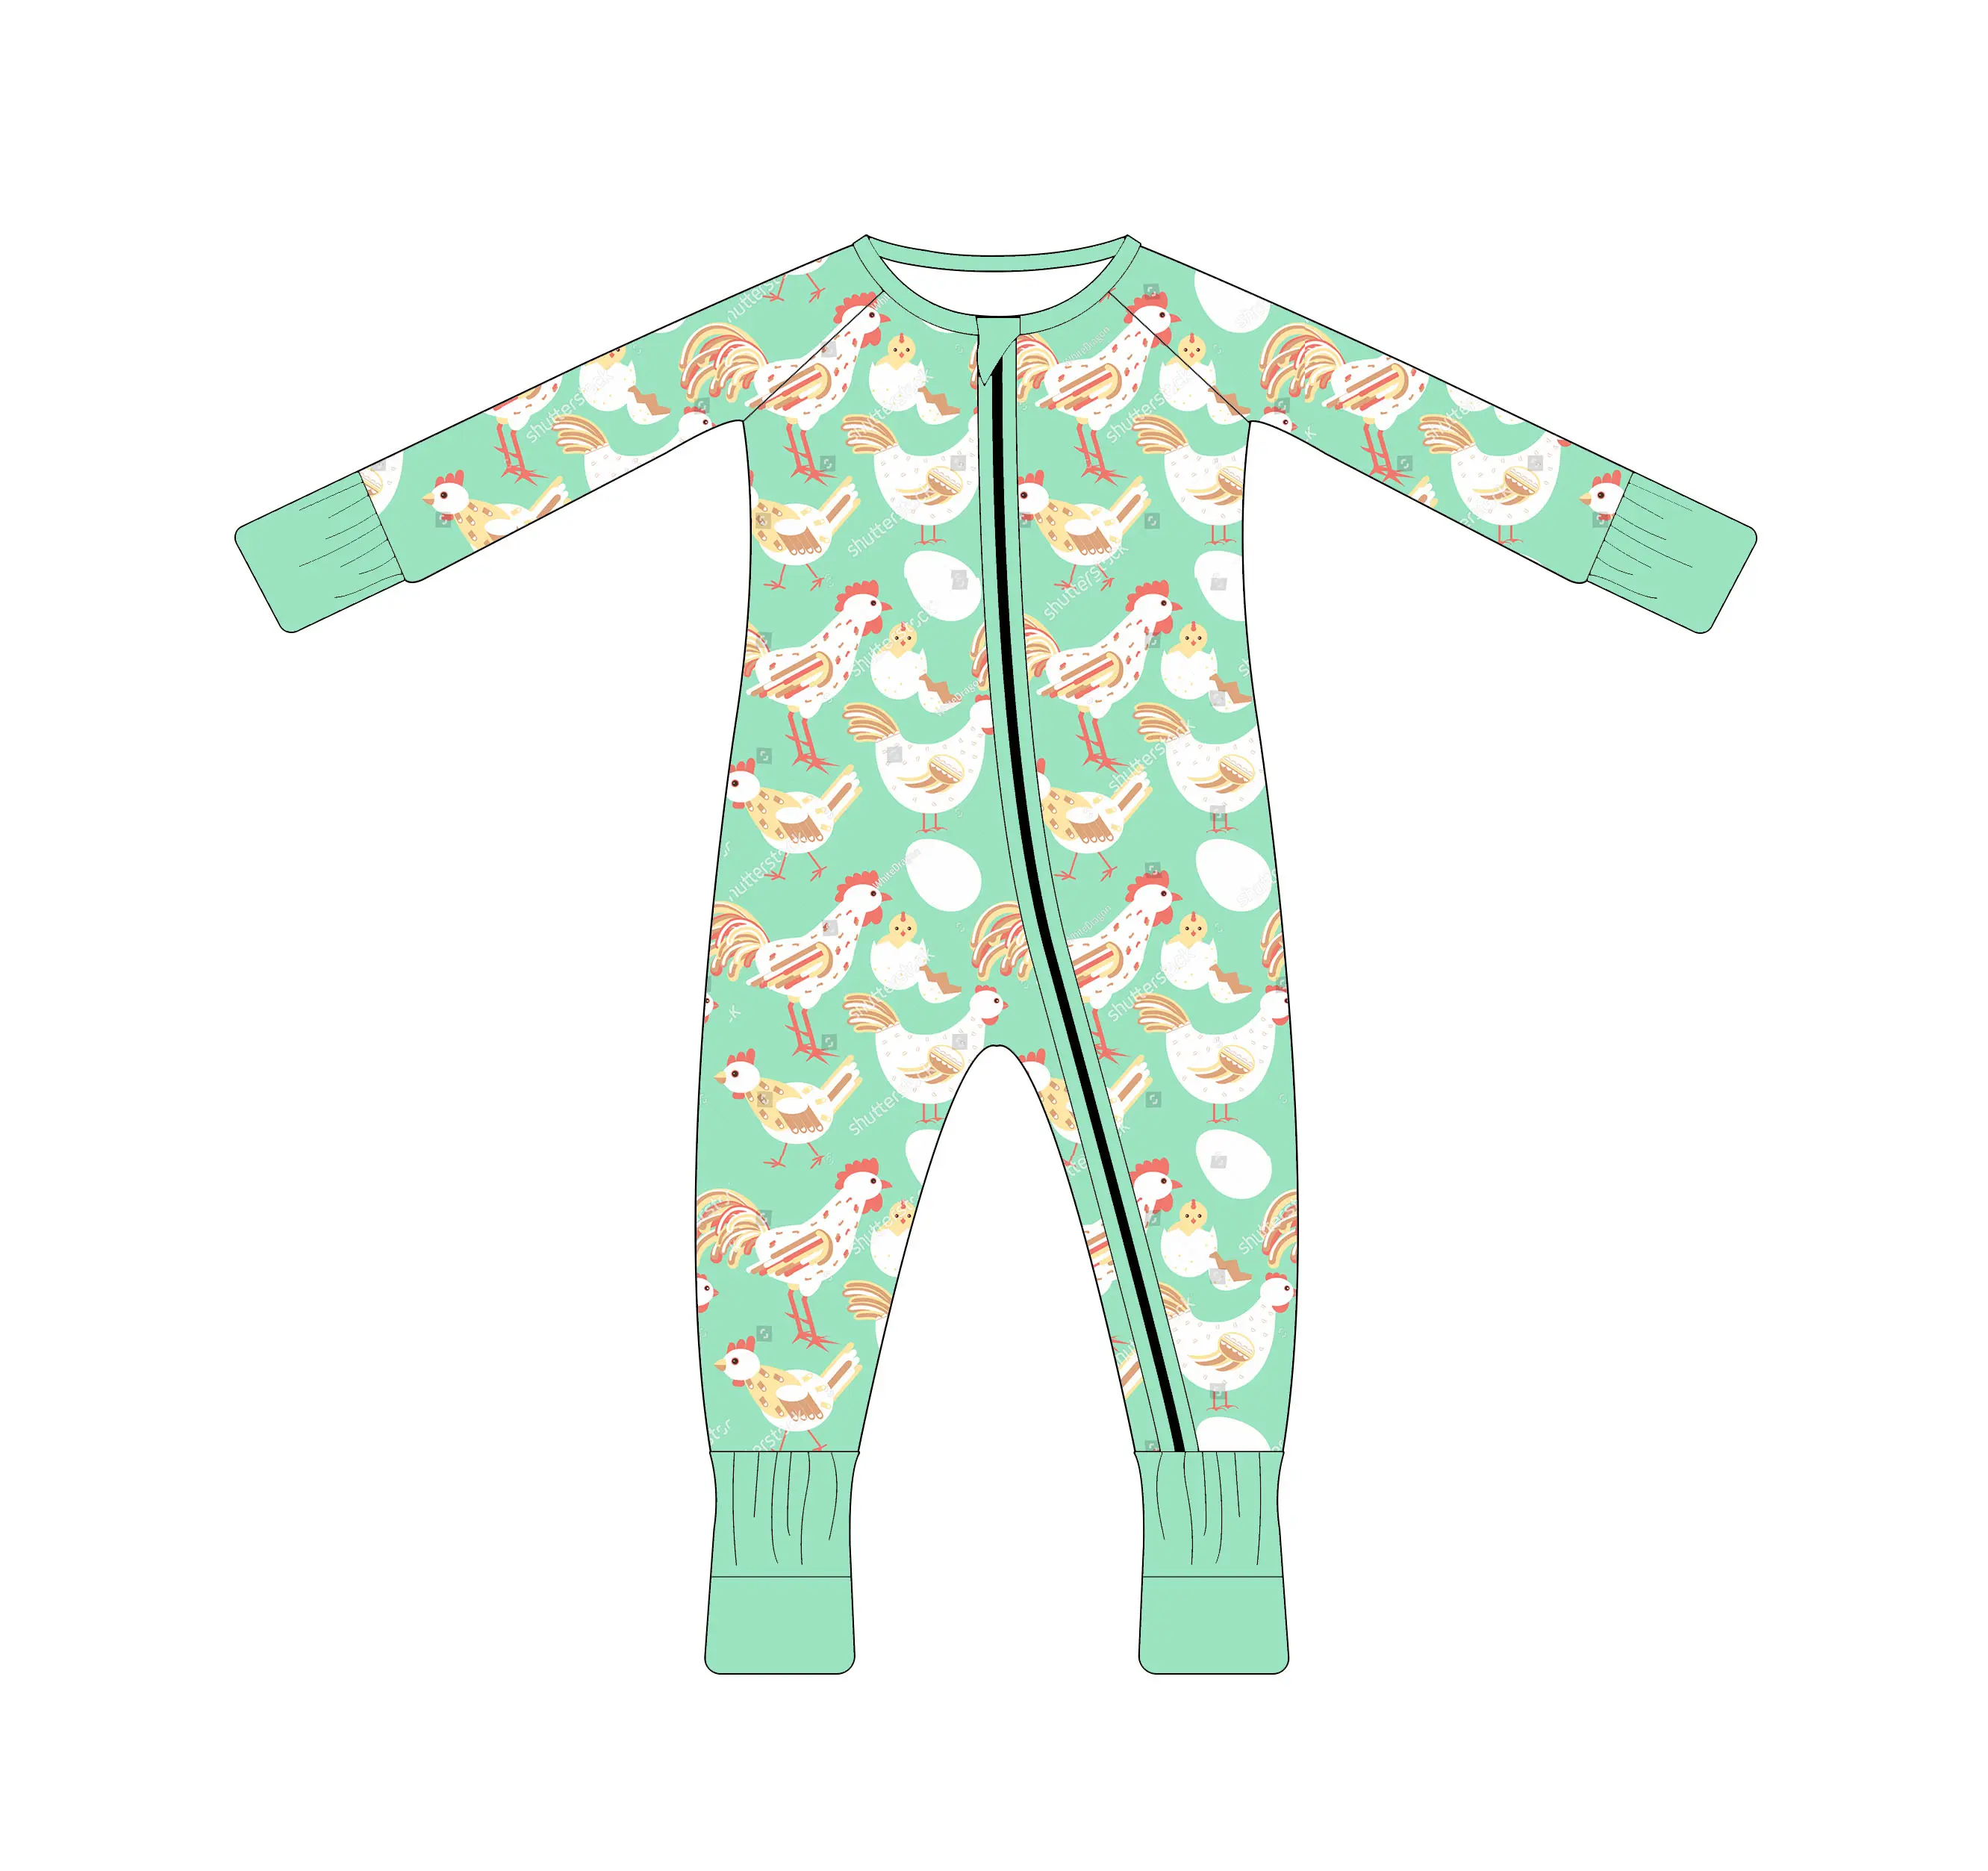 Pola desain terbaru pakaian bayi kelinci untuk anak baru lahir